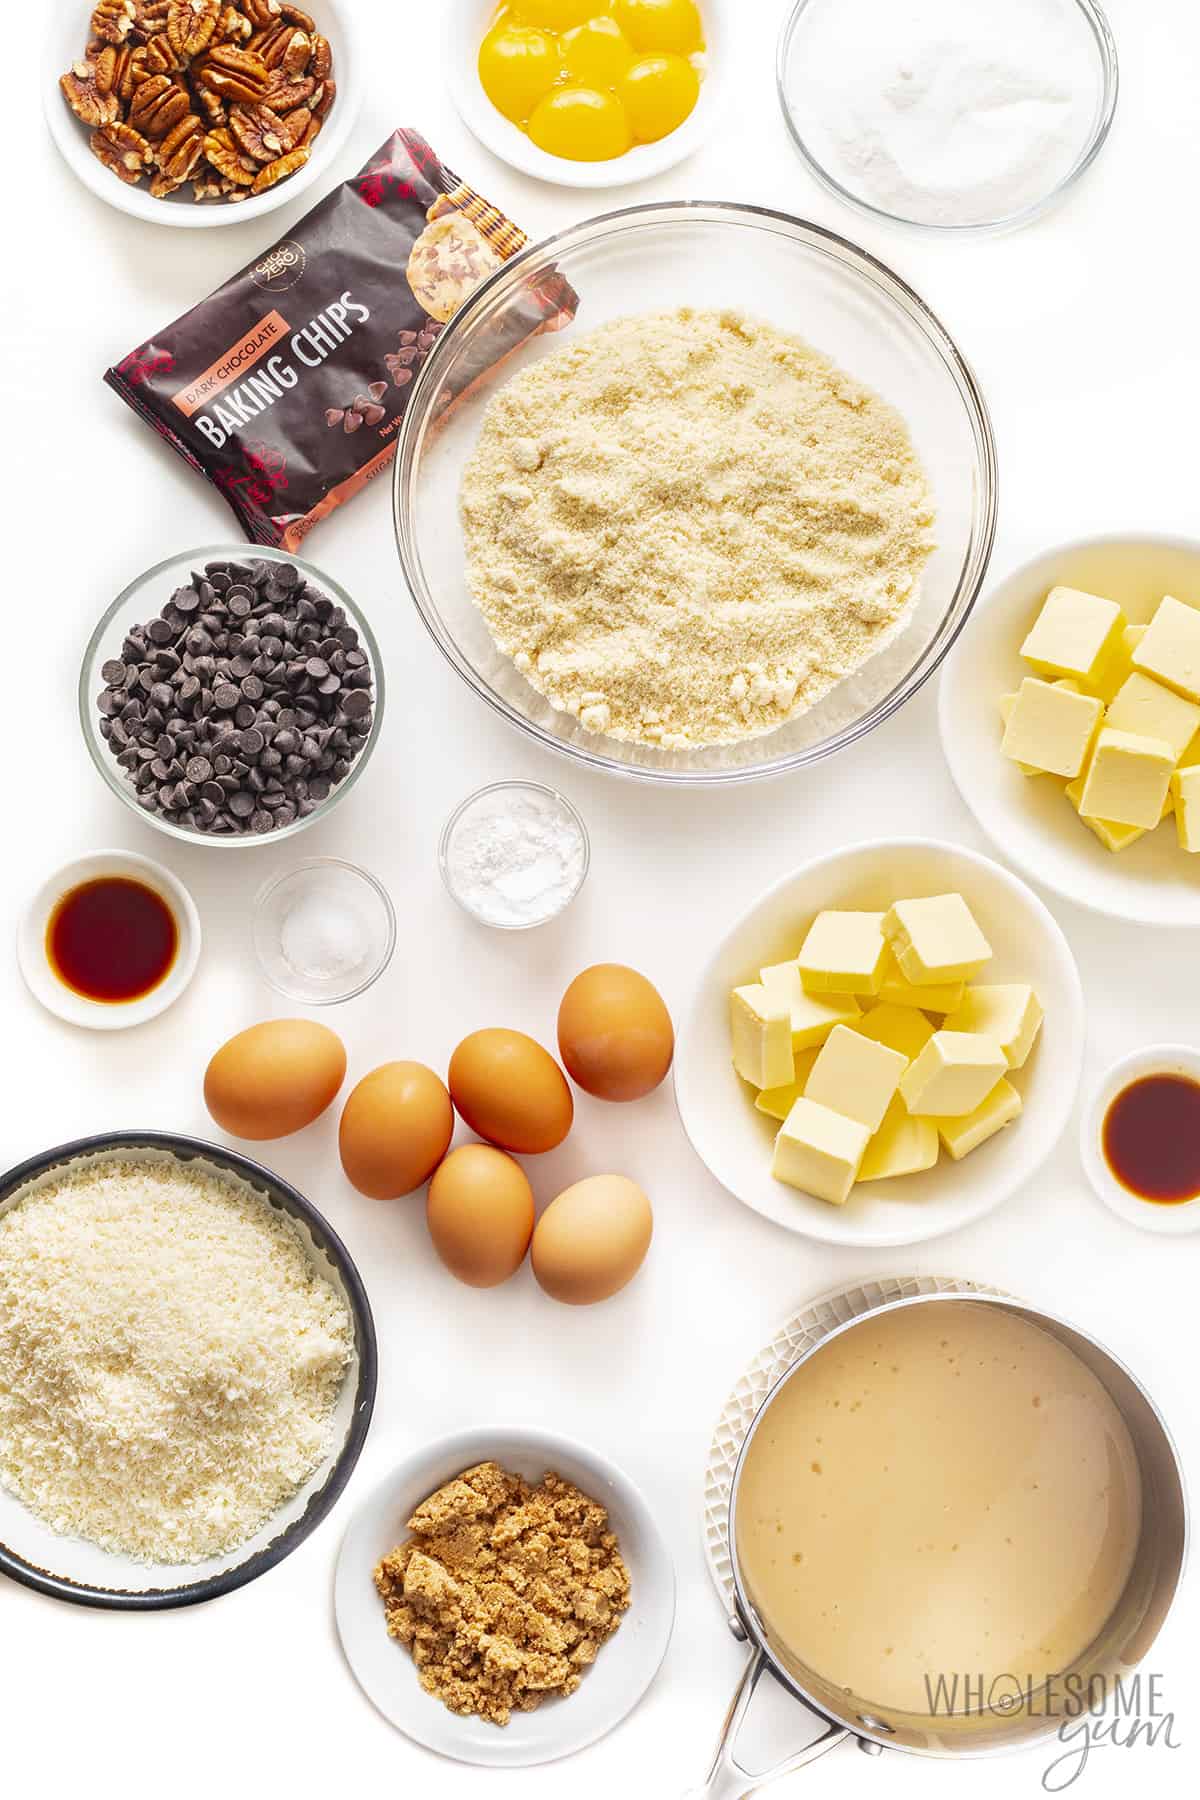 Ingredients to make keto German chocolate cake.